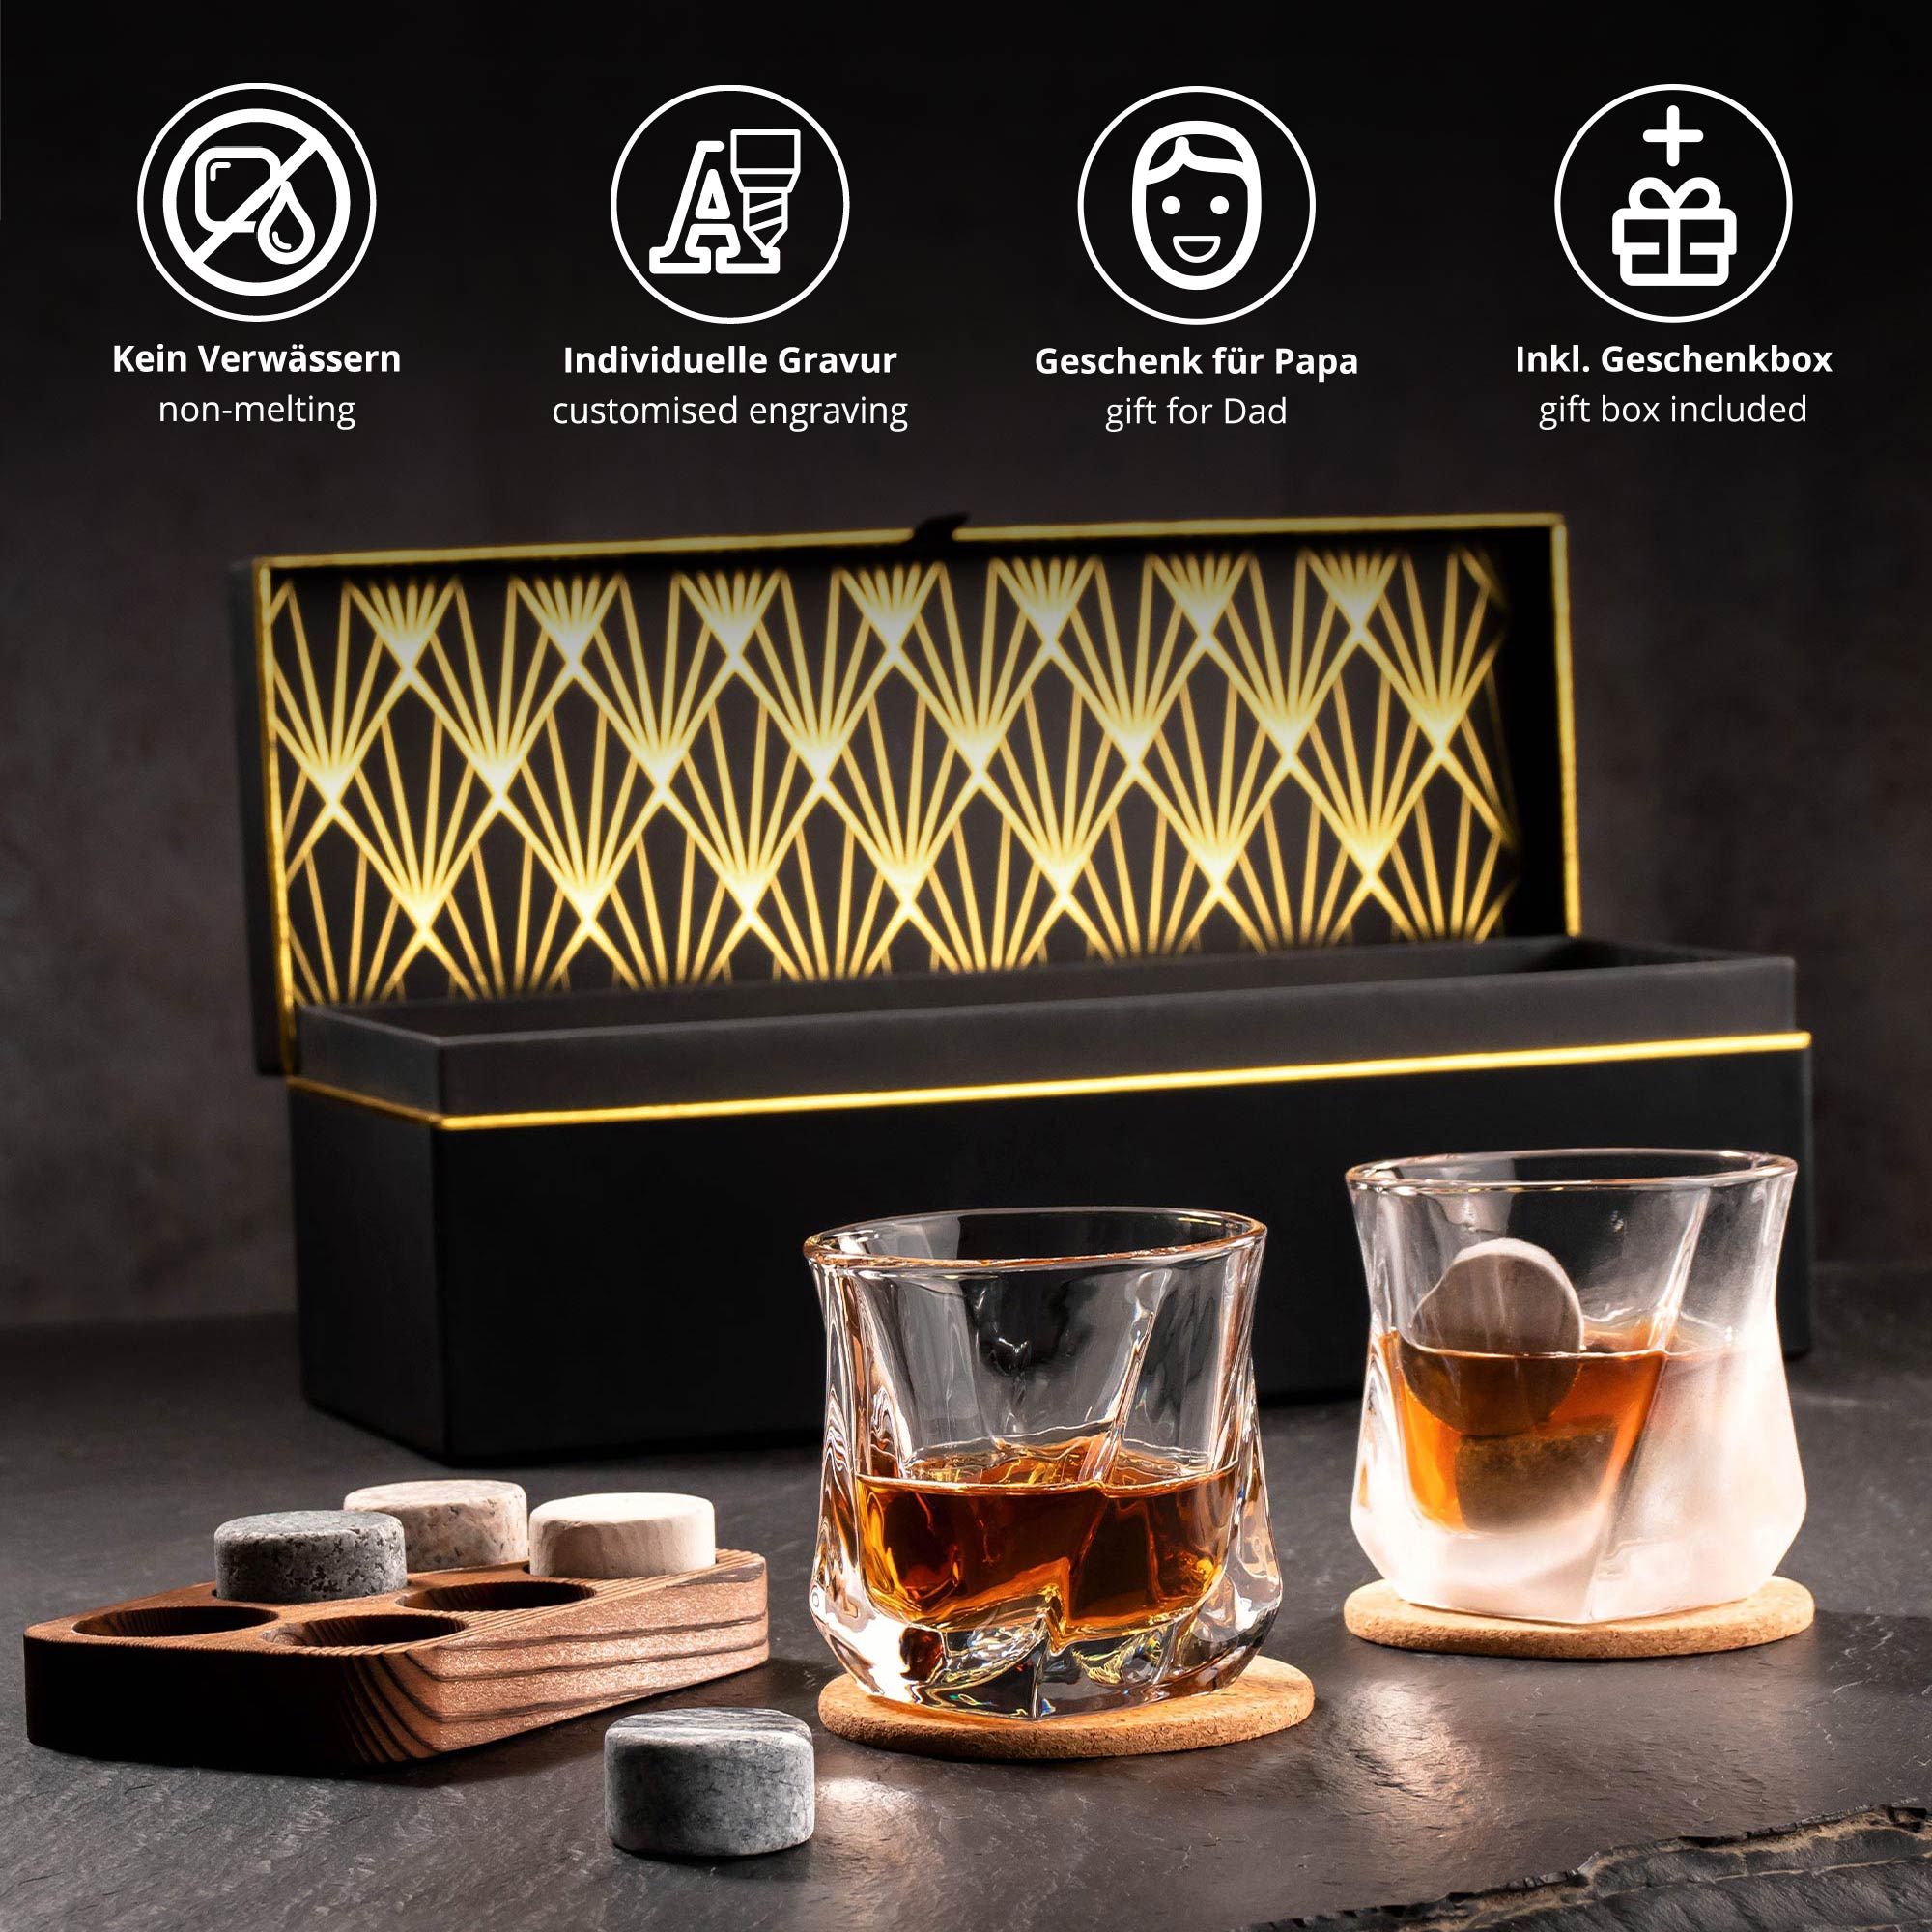 Whisky Set in personalisierter Geschenkbox - Bester Papa 0021-0002-DE-0001 - 2